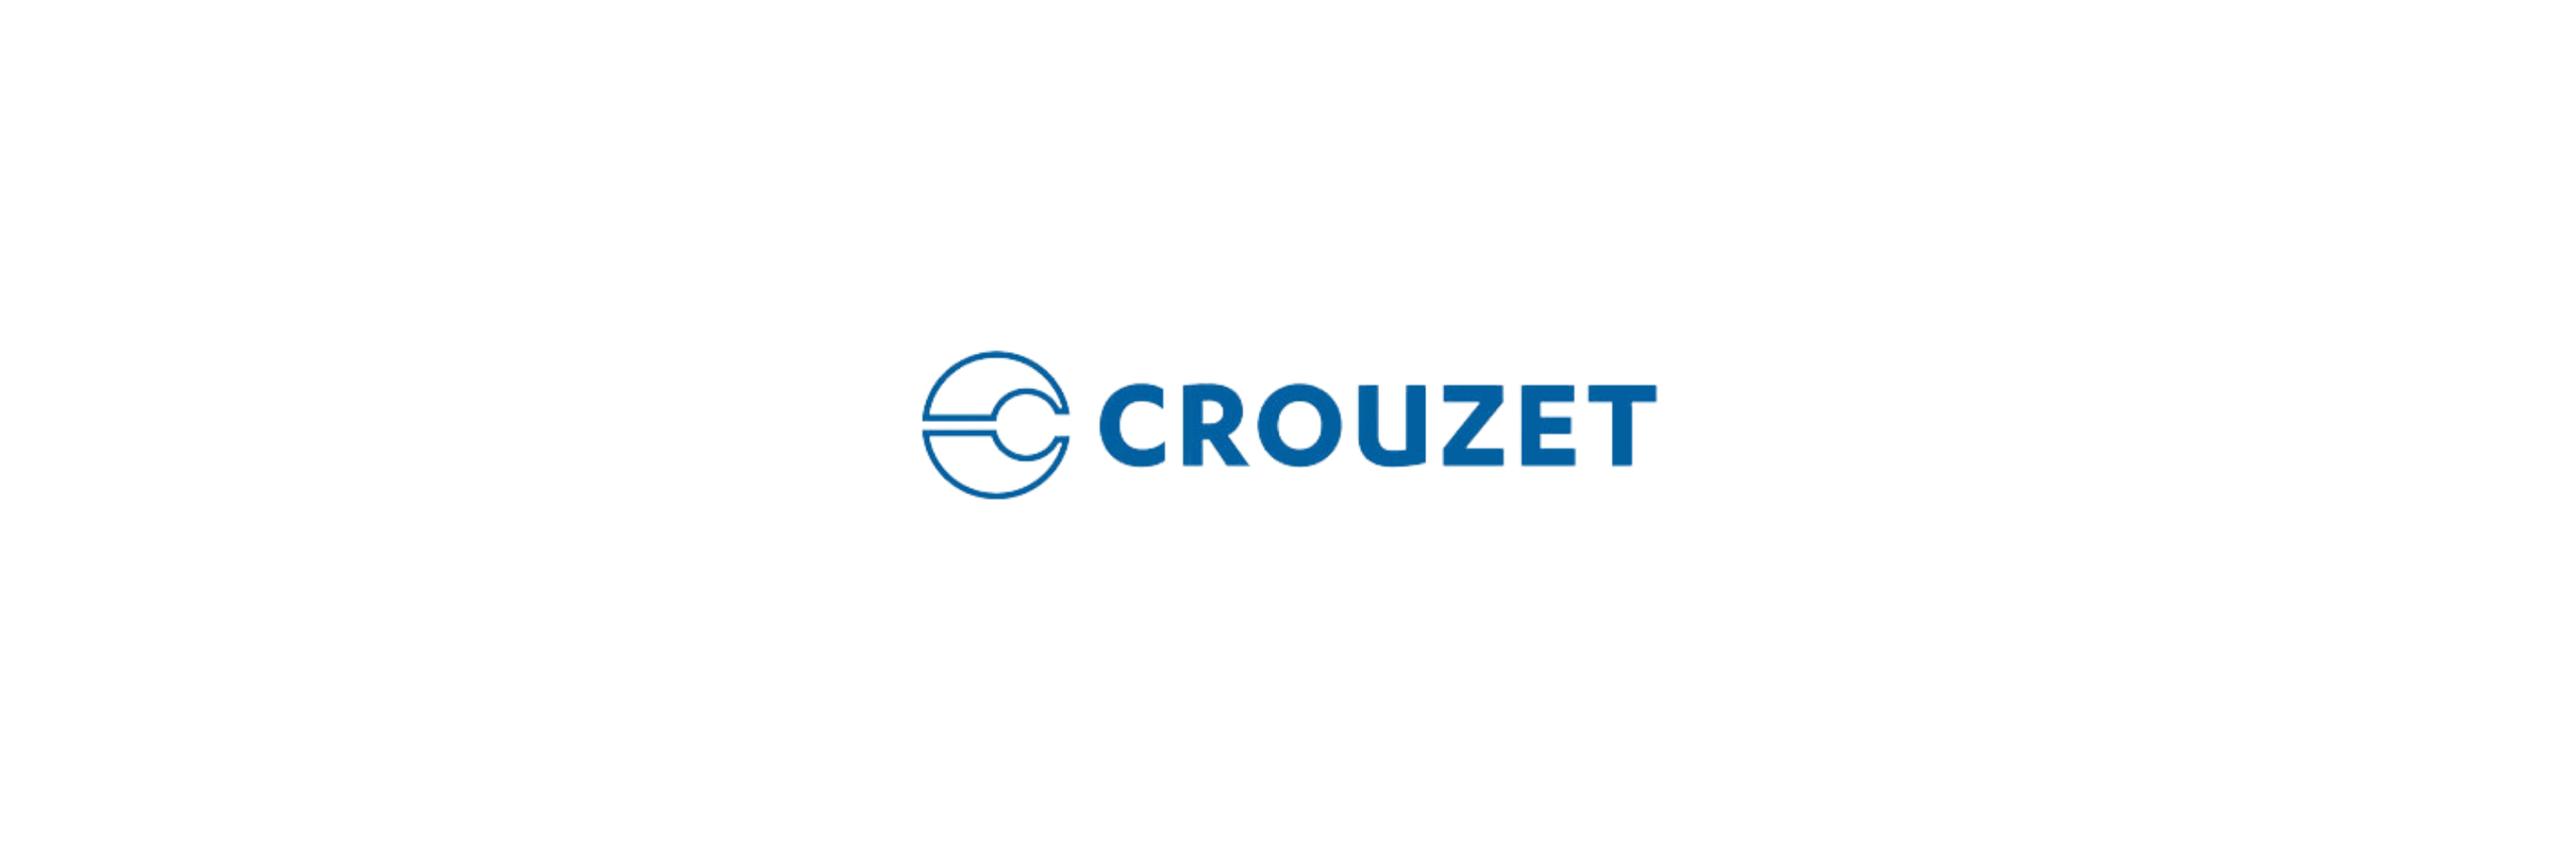 Crouzet - Klenk Maschinenhandel